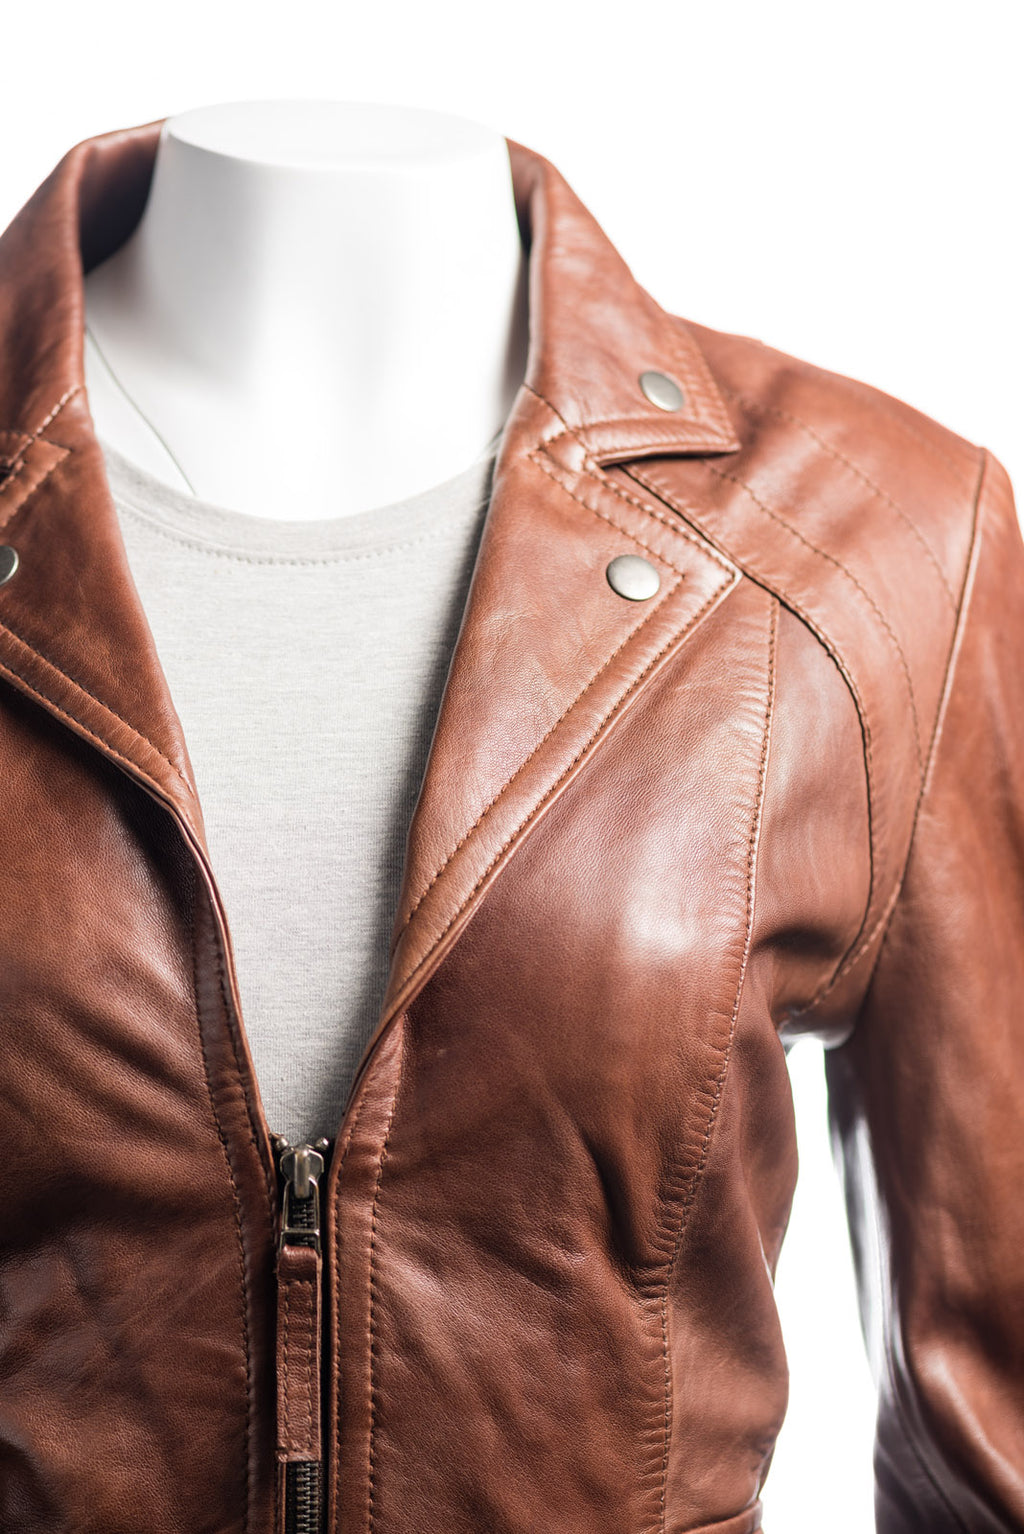 Ladies Short Blazer Style Zipped Leather Jacket: Marissa